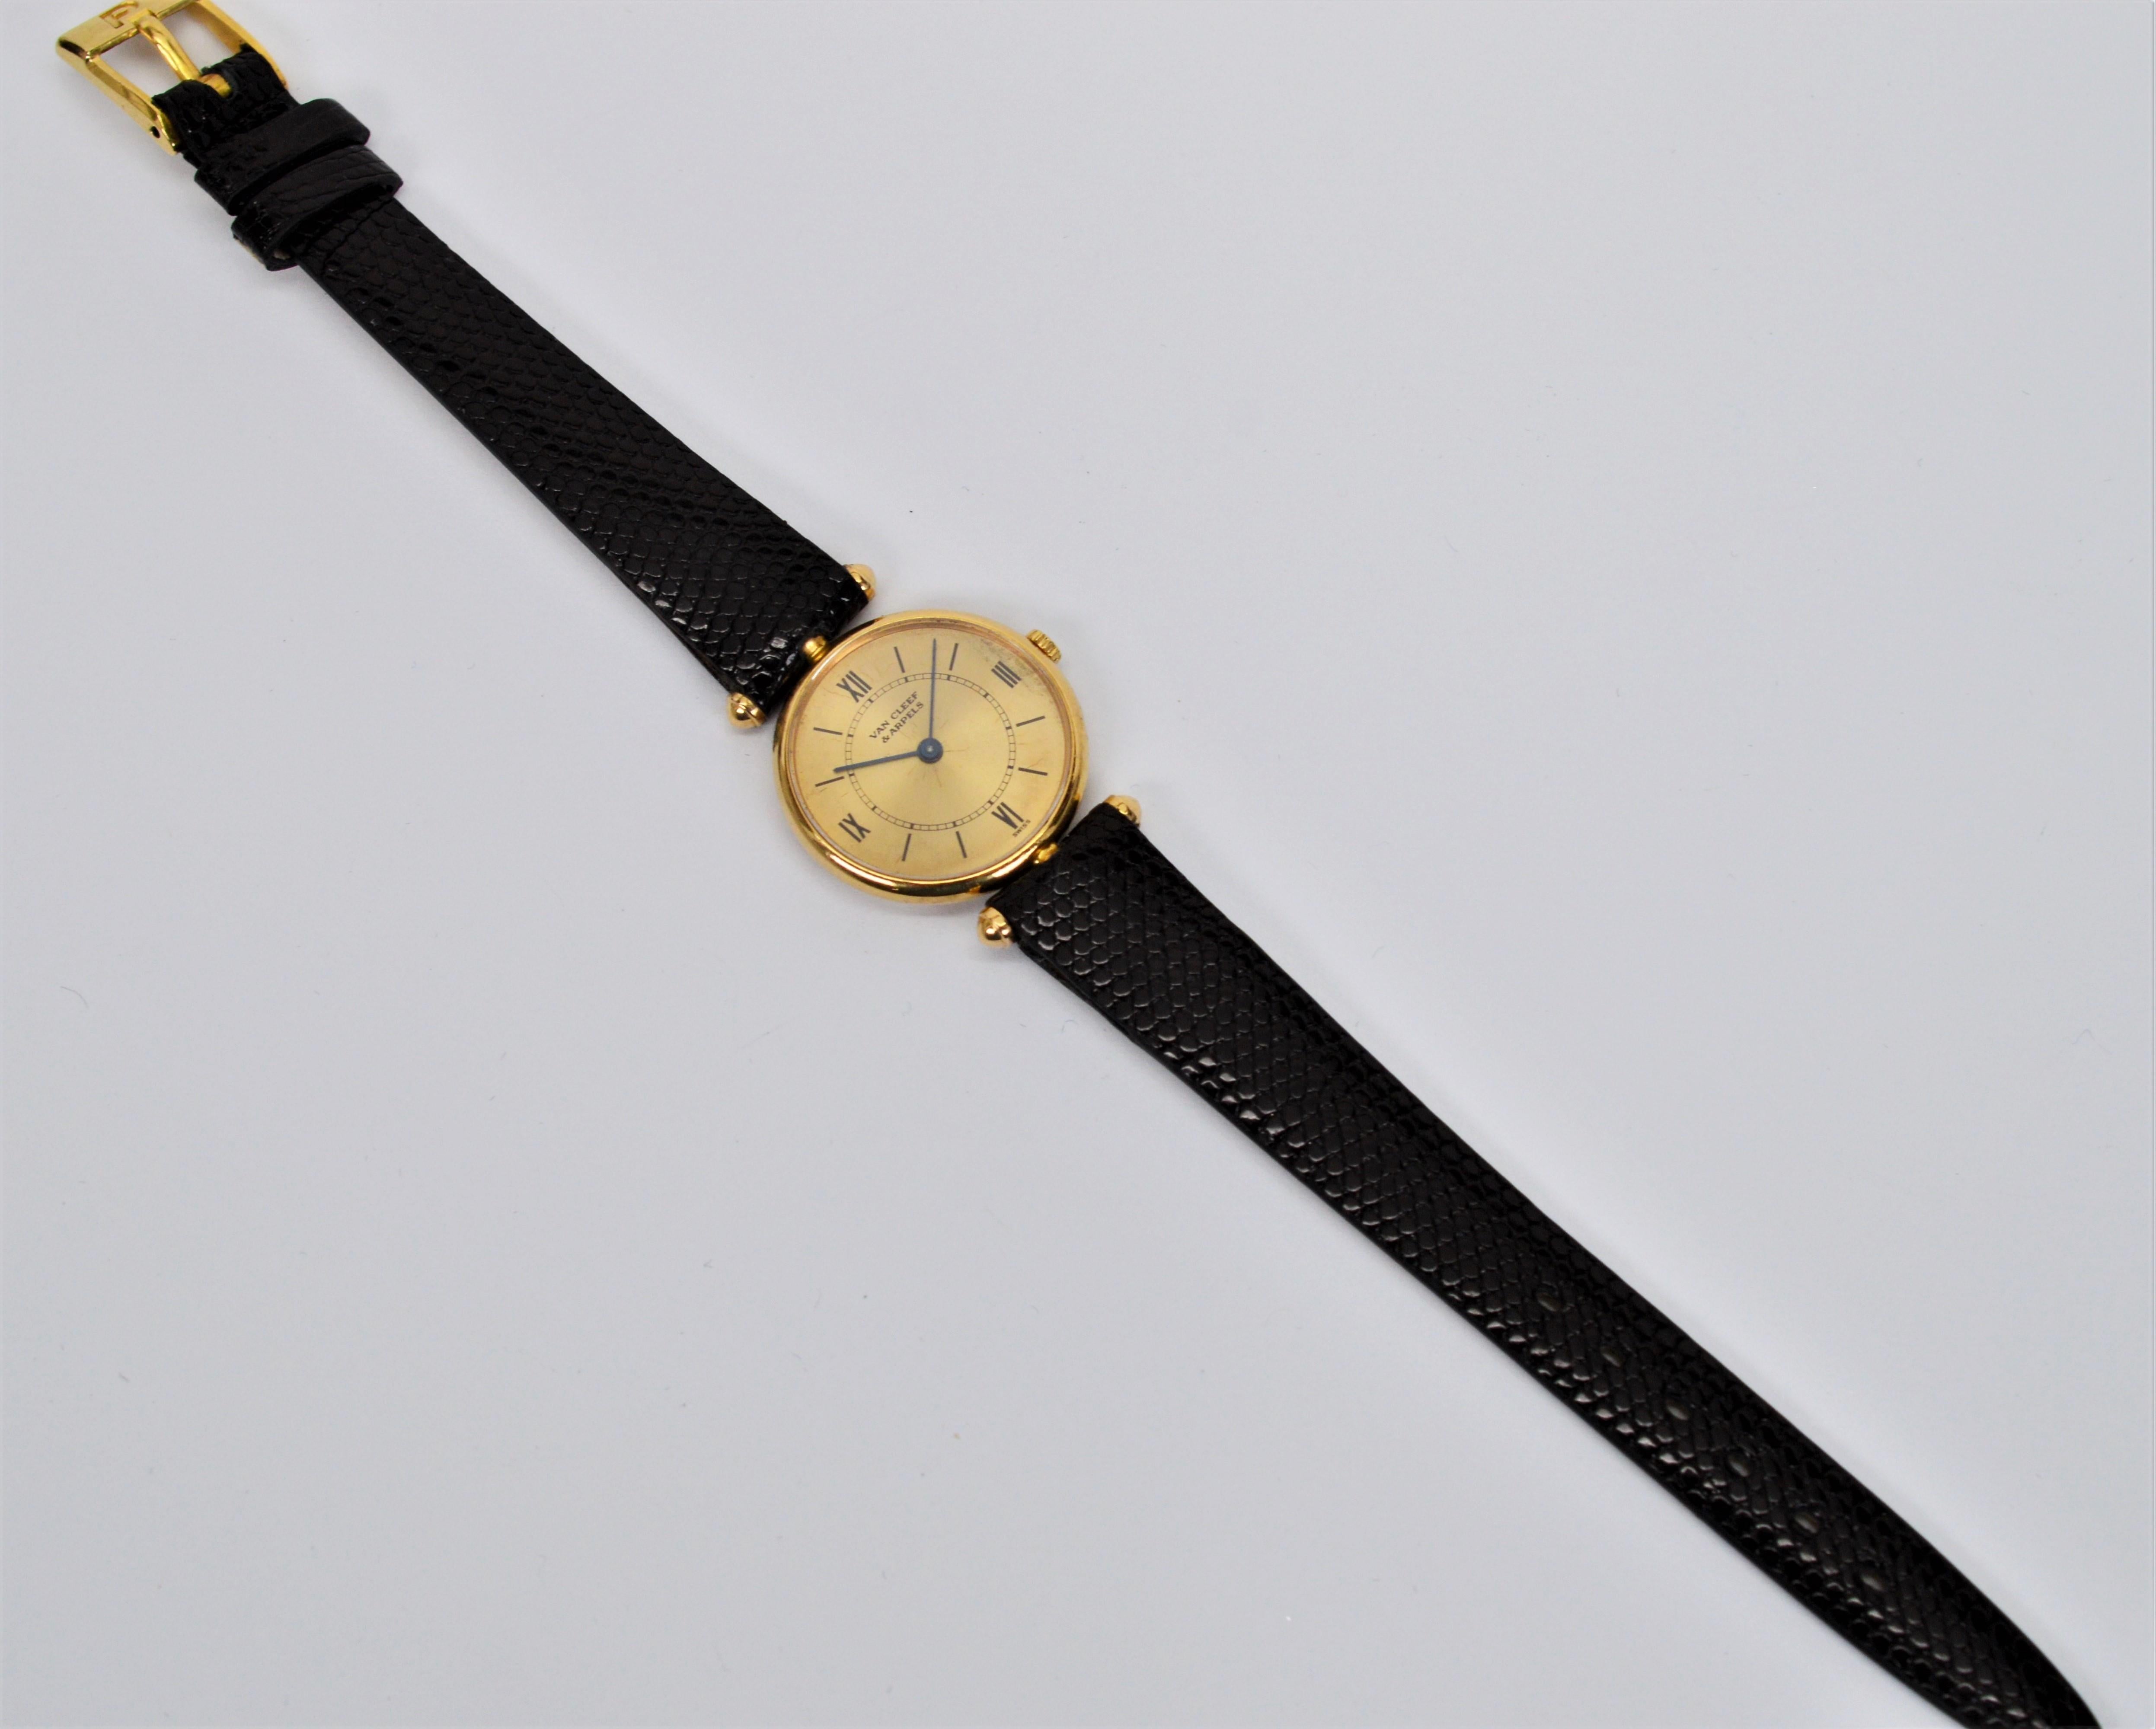 Très élégante, cette montre-bracelet Classique pour femme de Van Cleef & Arpels présente un design élancé et attrayant en or jaune 18 carats.  Le cadran champagne d'origine de ce modèle Van Cleef & Arpels  La montre-bracelet est dotée d'un verre